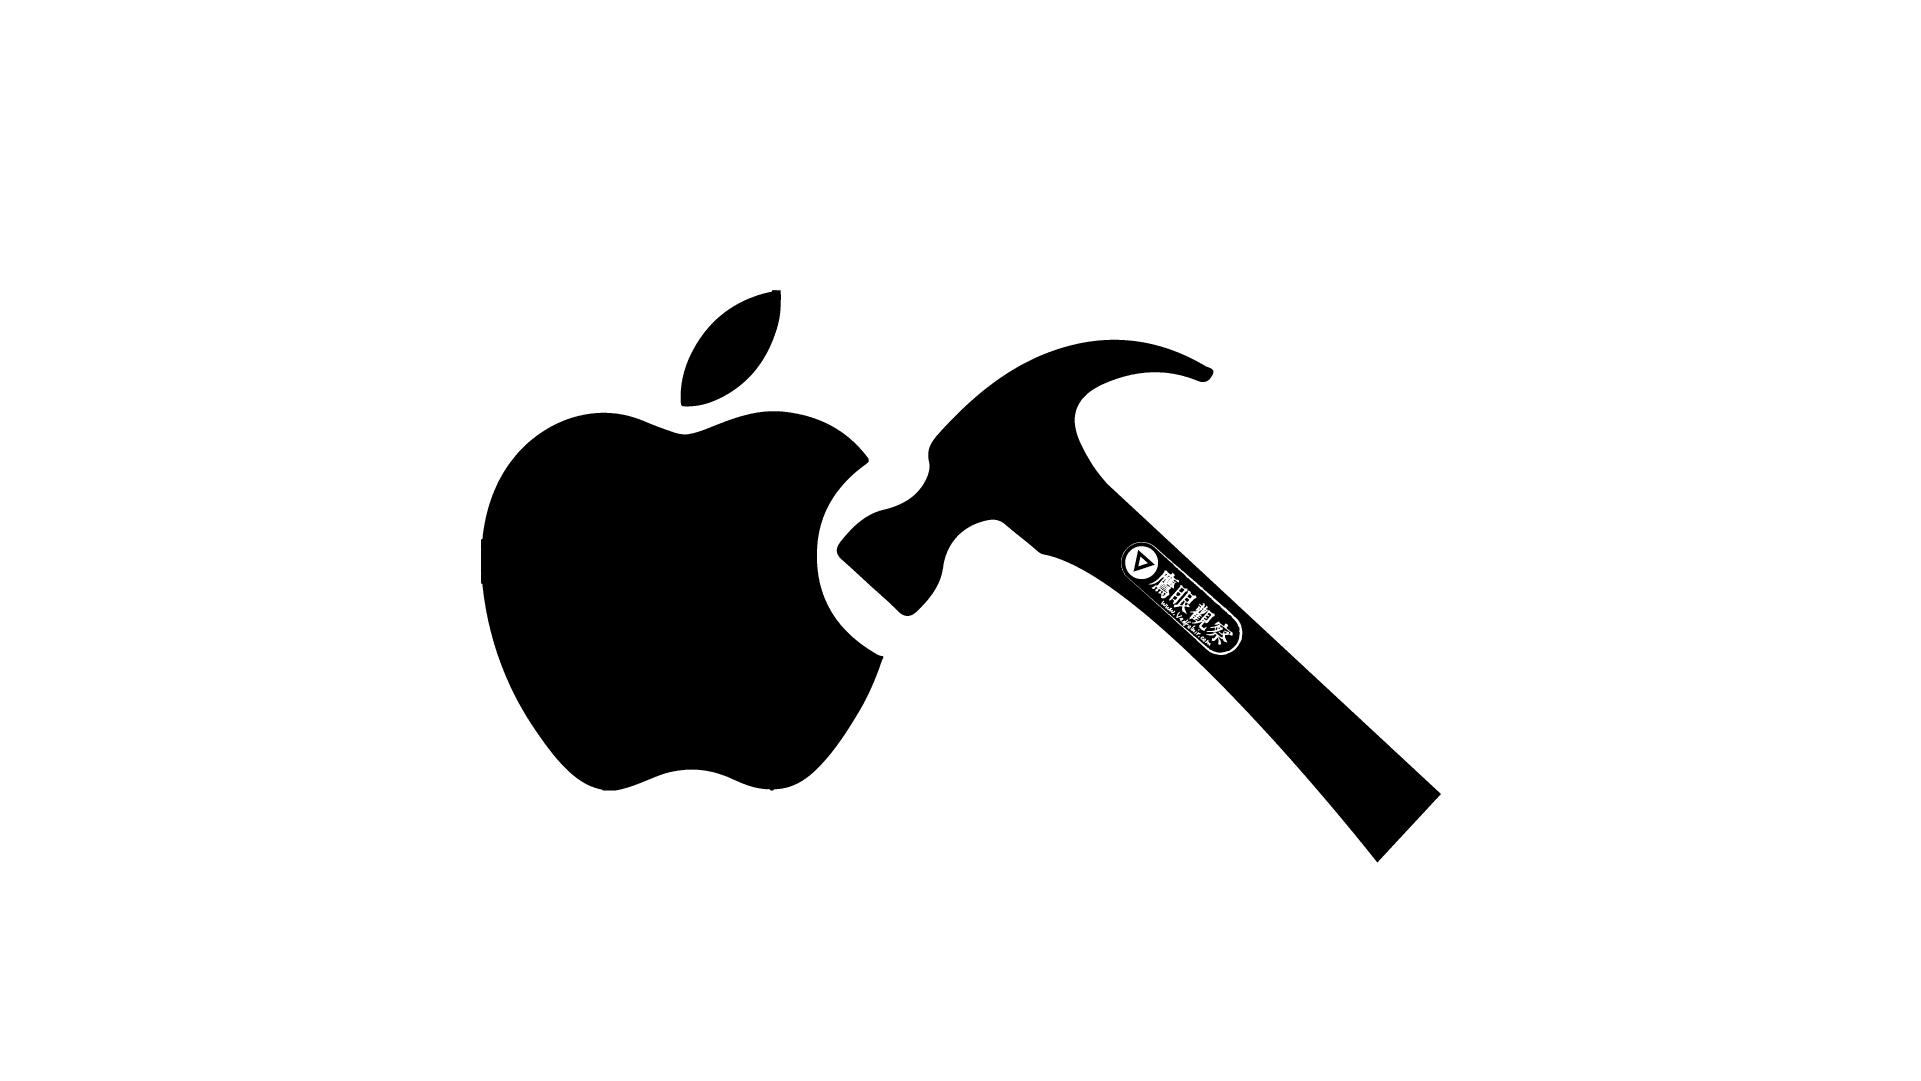 蘋果 Apple macOS 檔案瀏覽器 Finder 應用程式崩潰當機沒回應